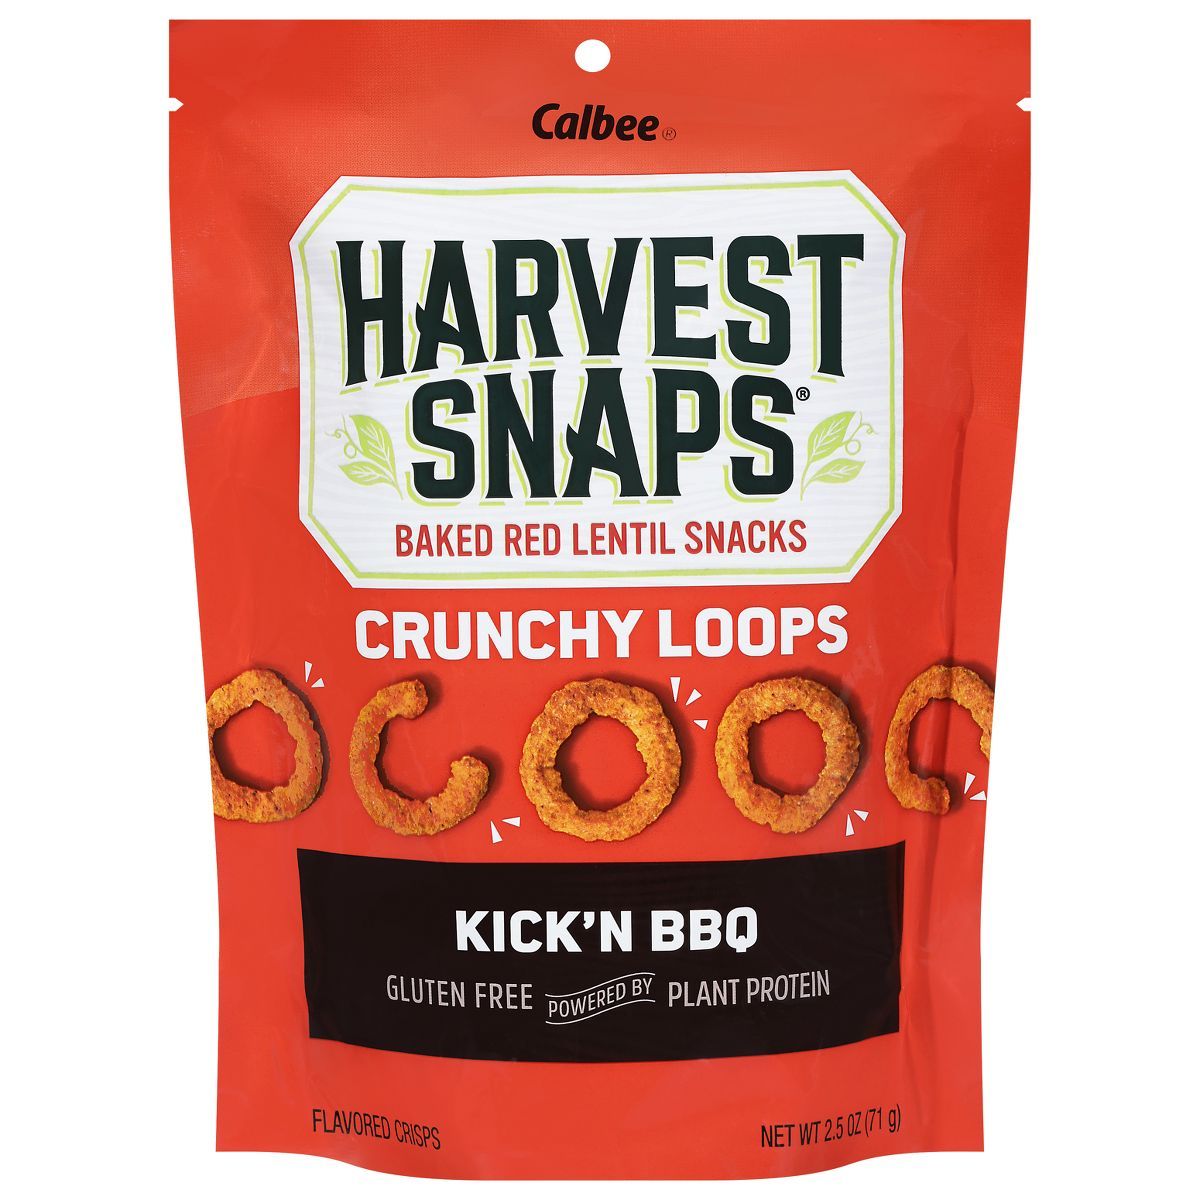 Harvest Snaps Crunchy Loops Kick'n BBQ Baked Red Lentil Snacks - 2.5oz | Target